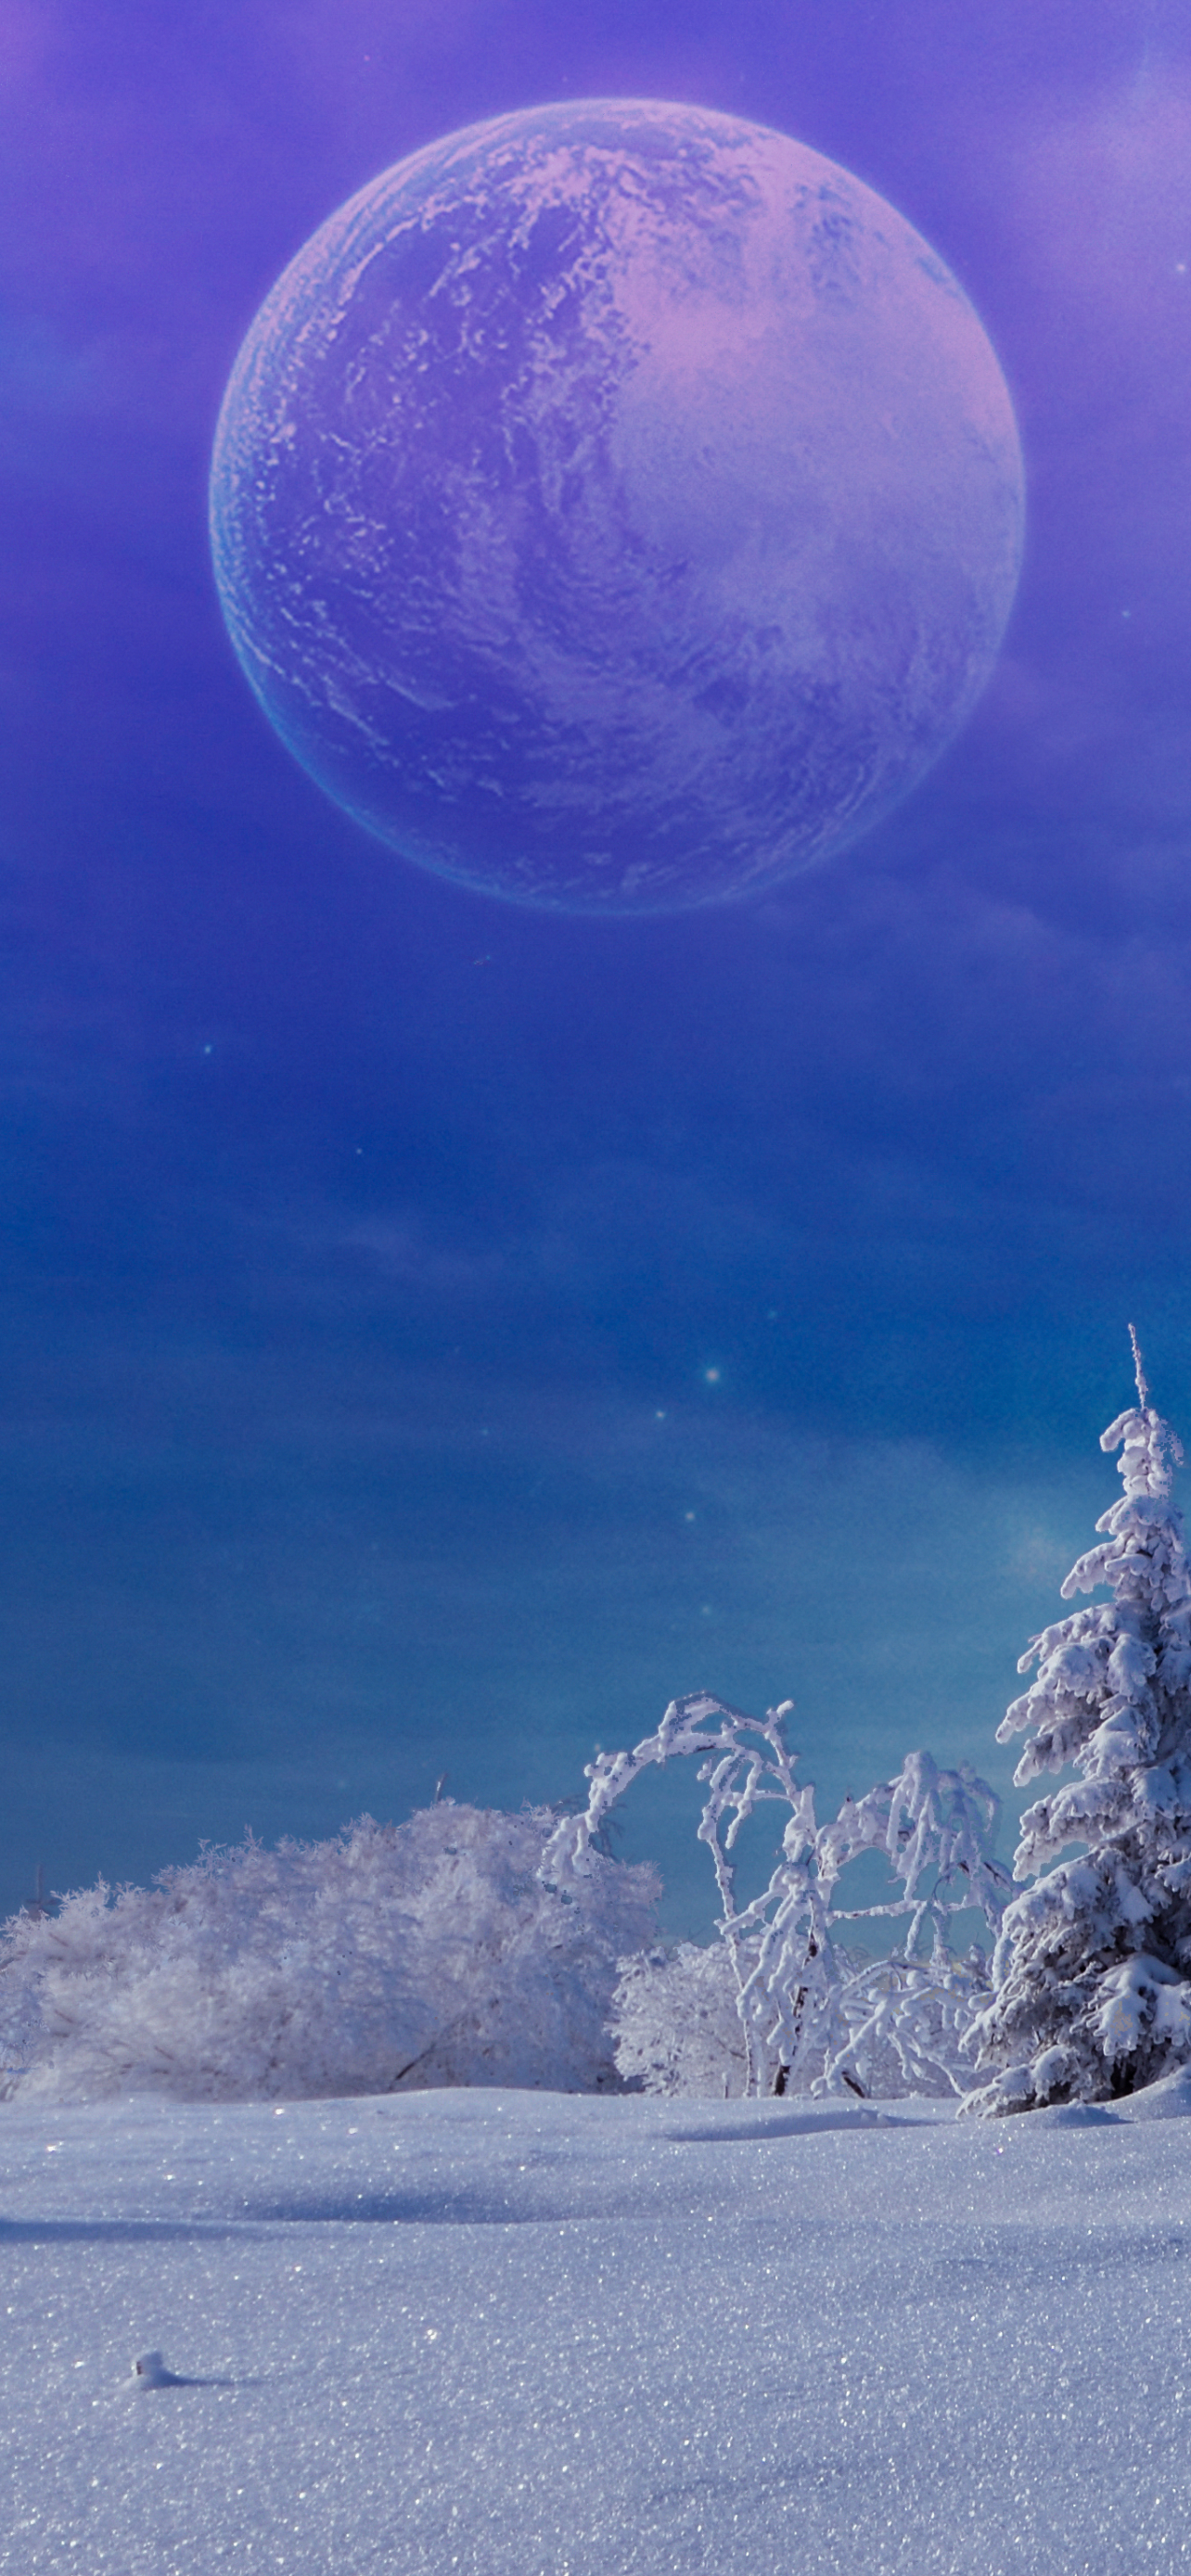 Descarga gratuita de fondo de pantalla para móvil de Invierno, Fantasía, Luna, Nieve, Planeta.